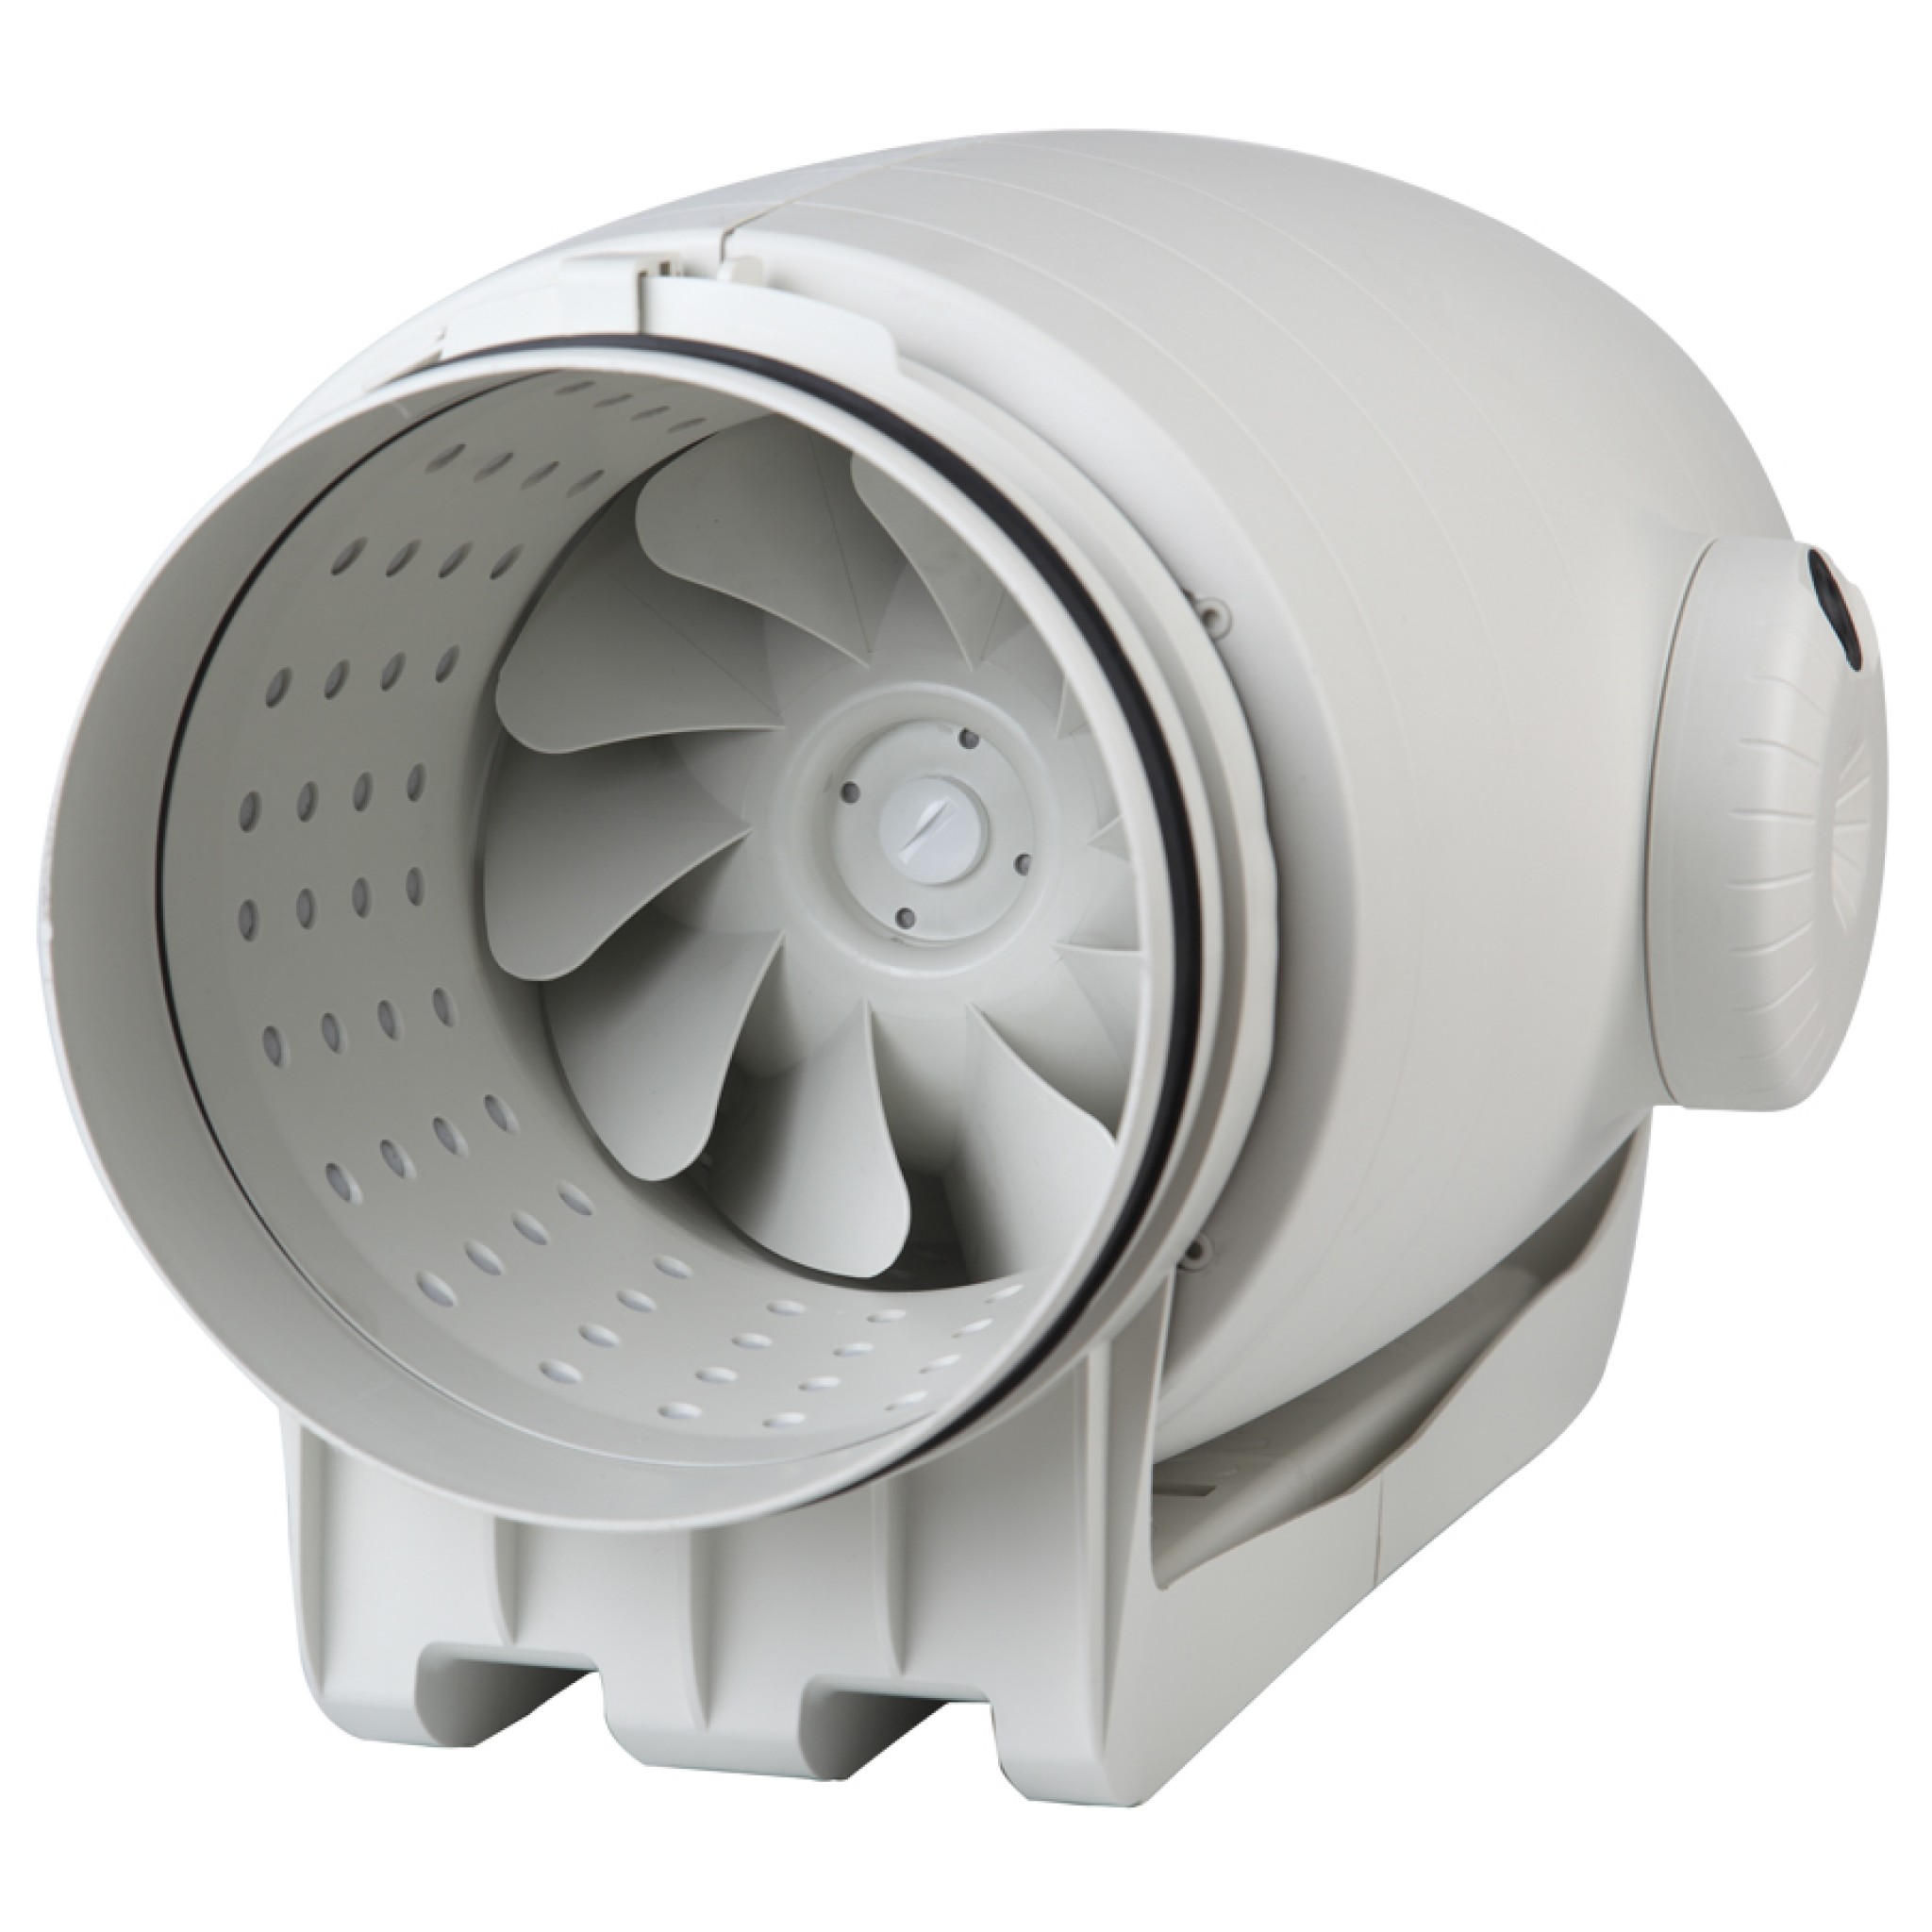 Канальный вентилятор с таймером отключения Soler&Palau TD-500/150-160 Silent T